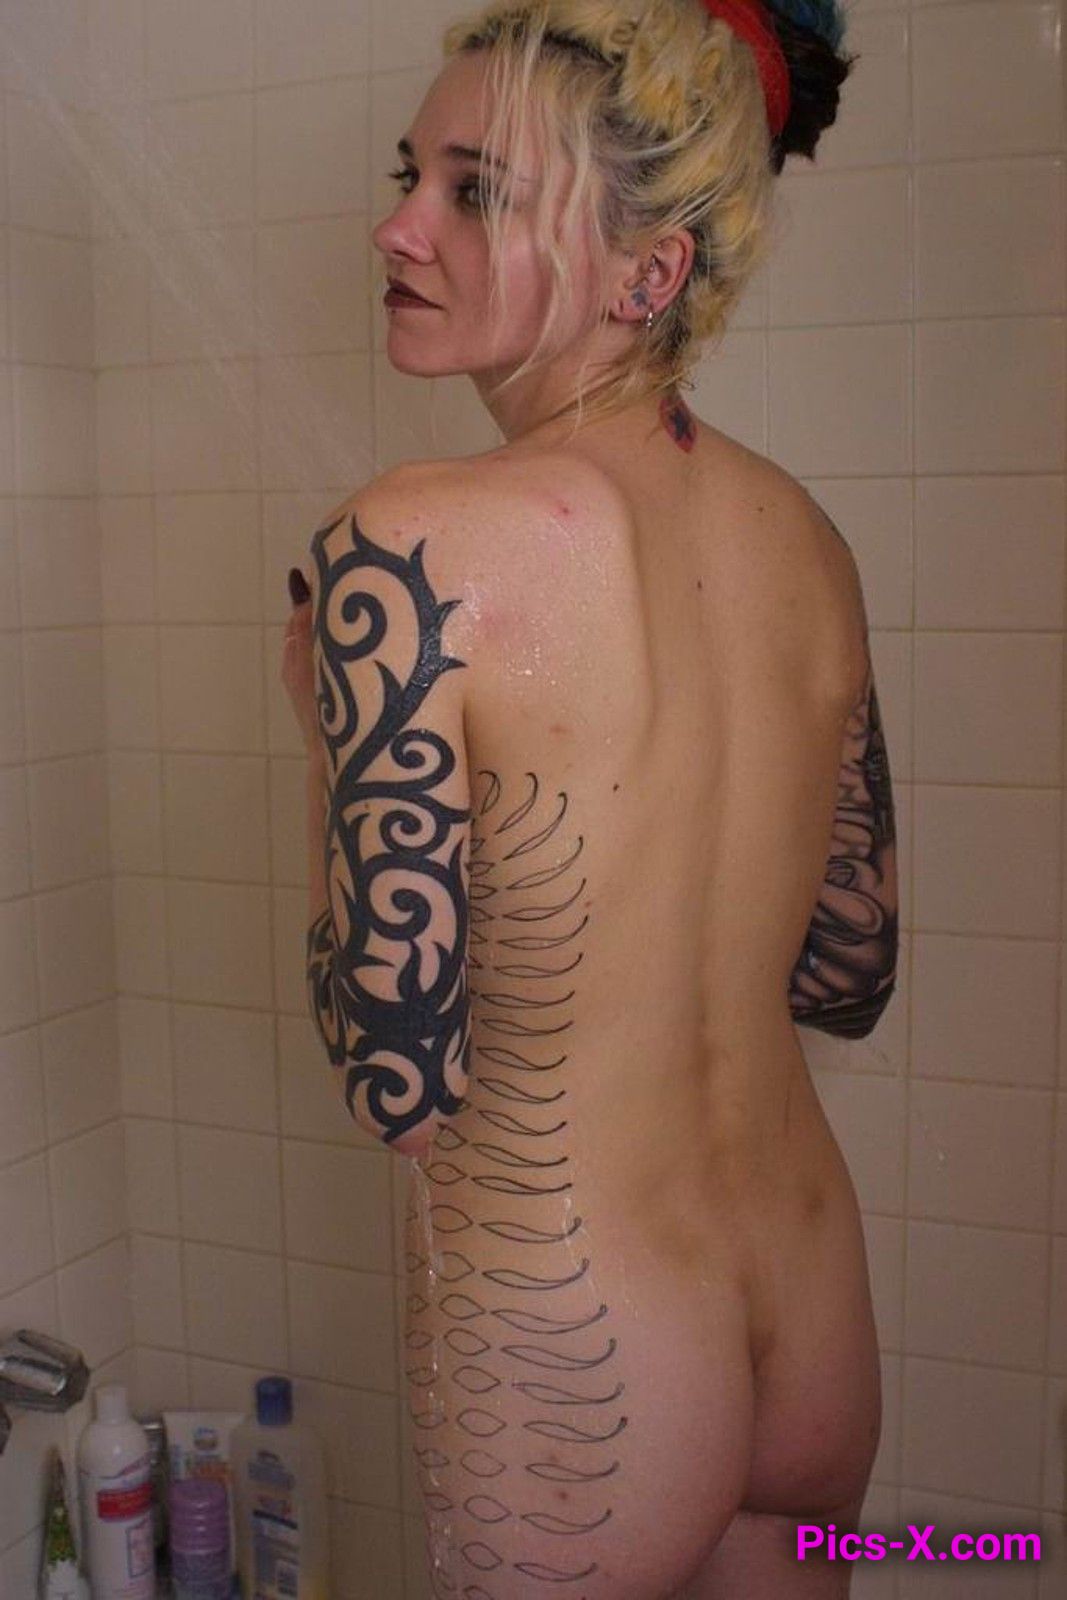 Tattooed blonde hottie enjoying a slow shower - Punk Rock Girlfriend - Image 52